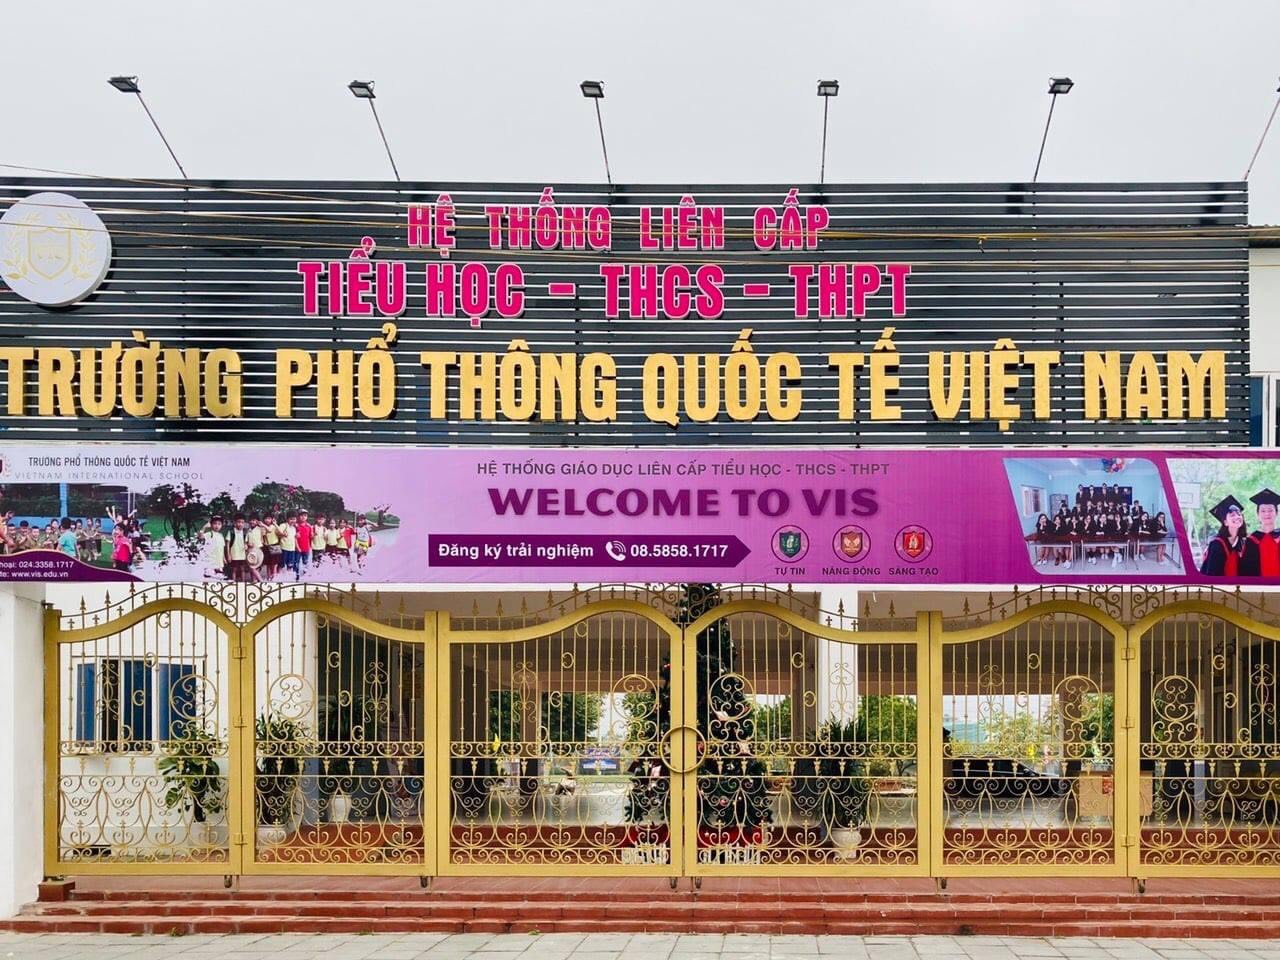 Trường phổ thông Quốc tế Việt Nam ảnh 1